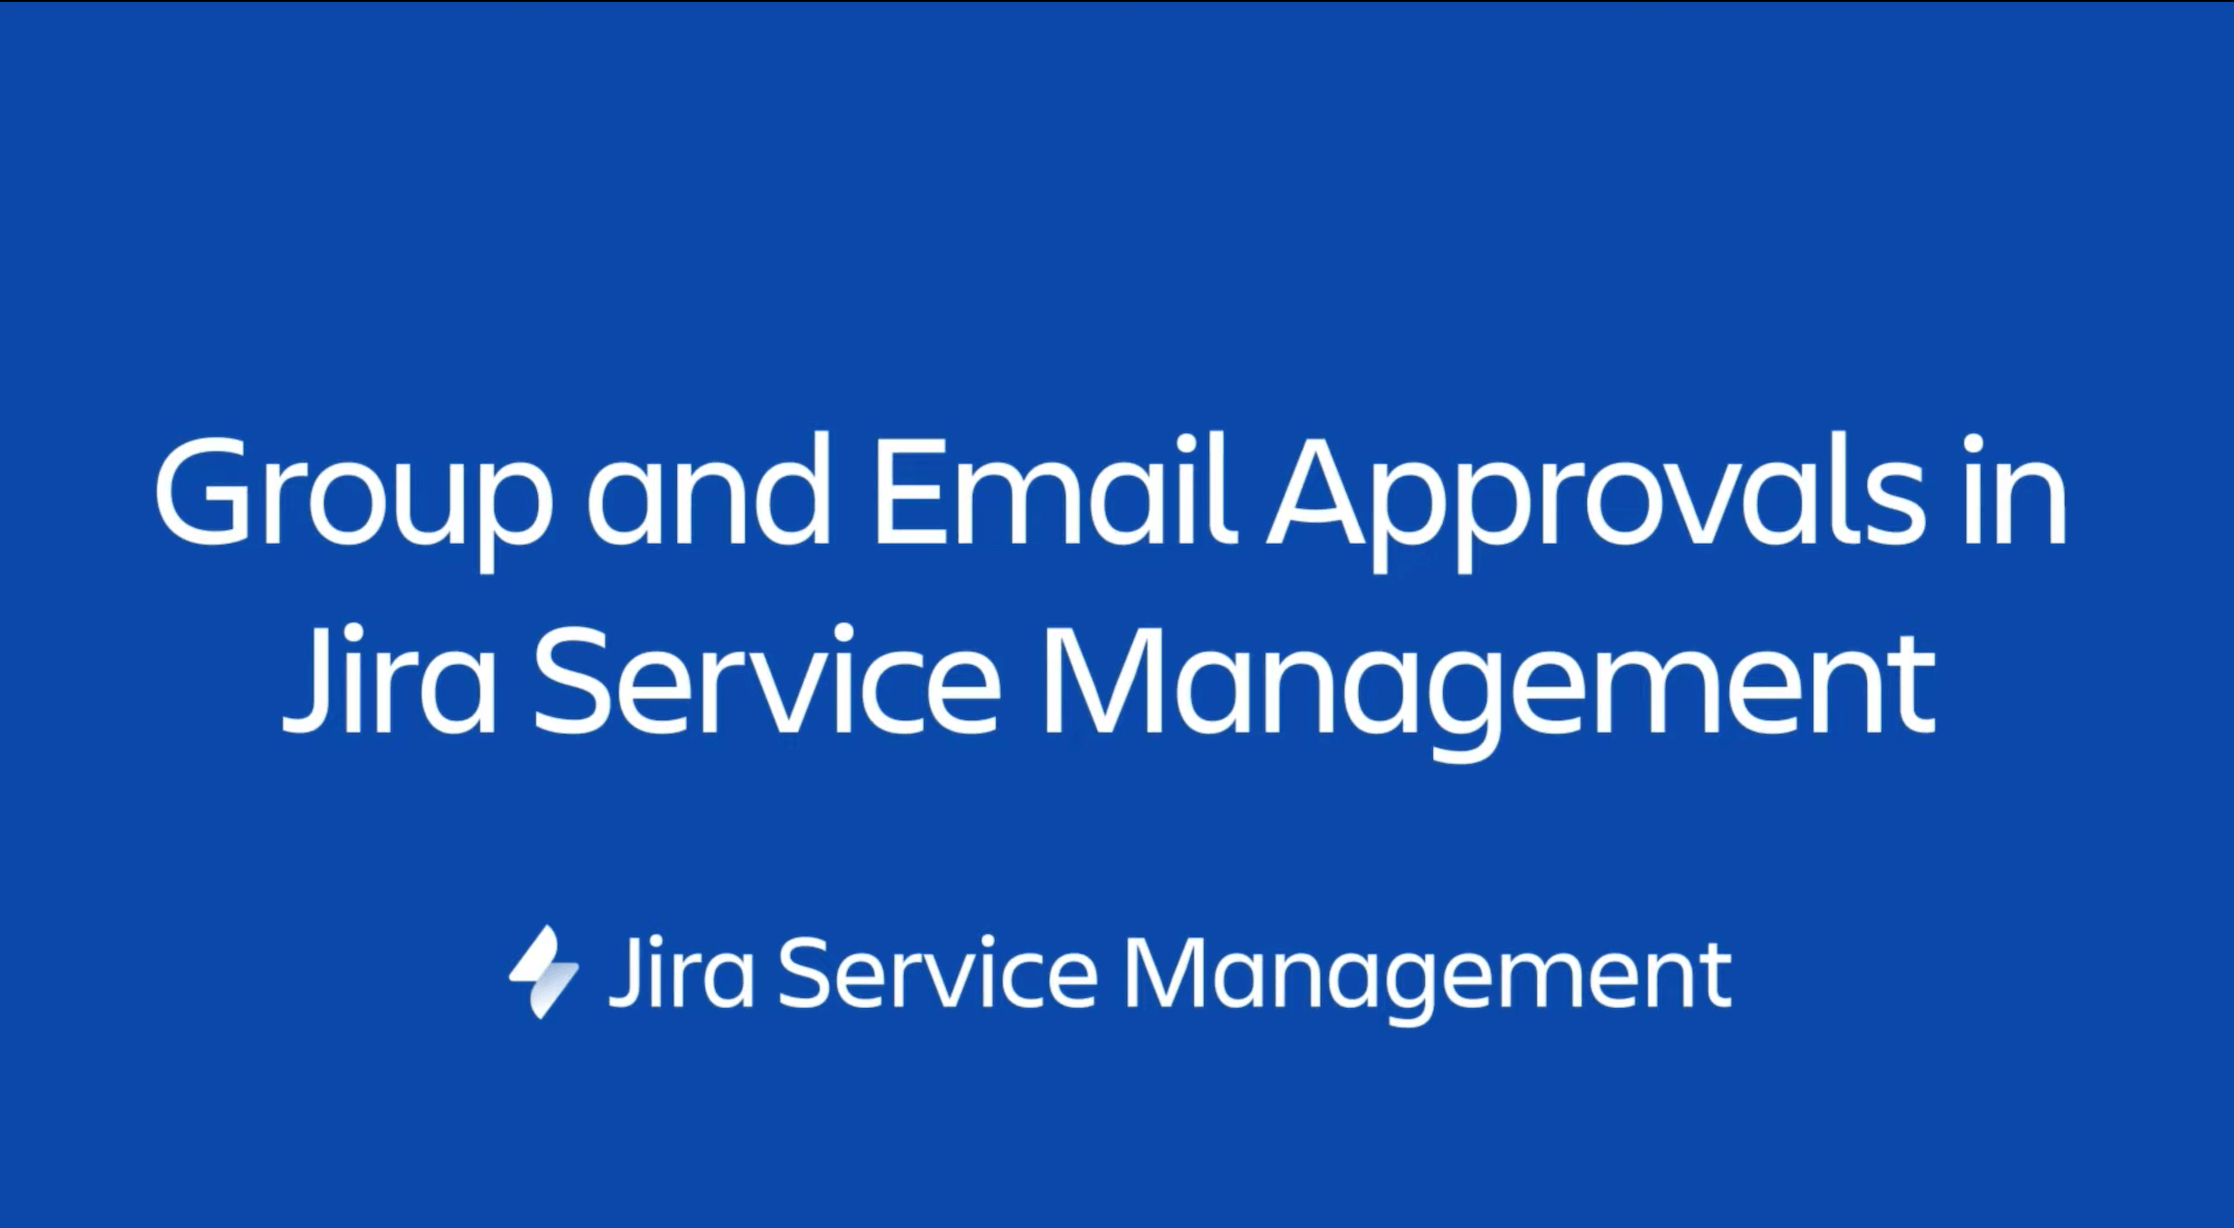 Reúna relatórios de bugs no Jira Service Management